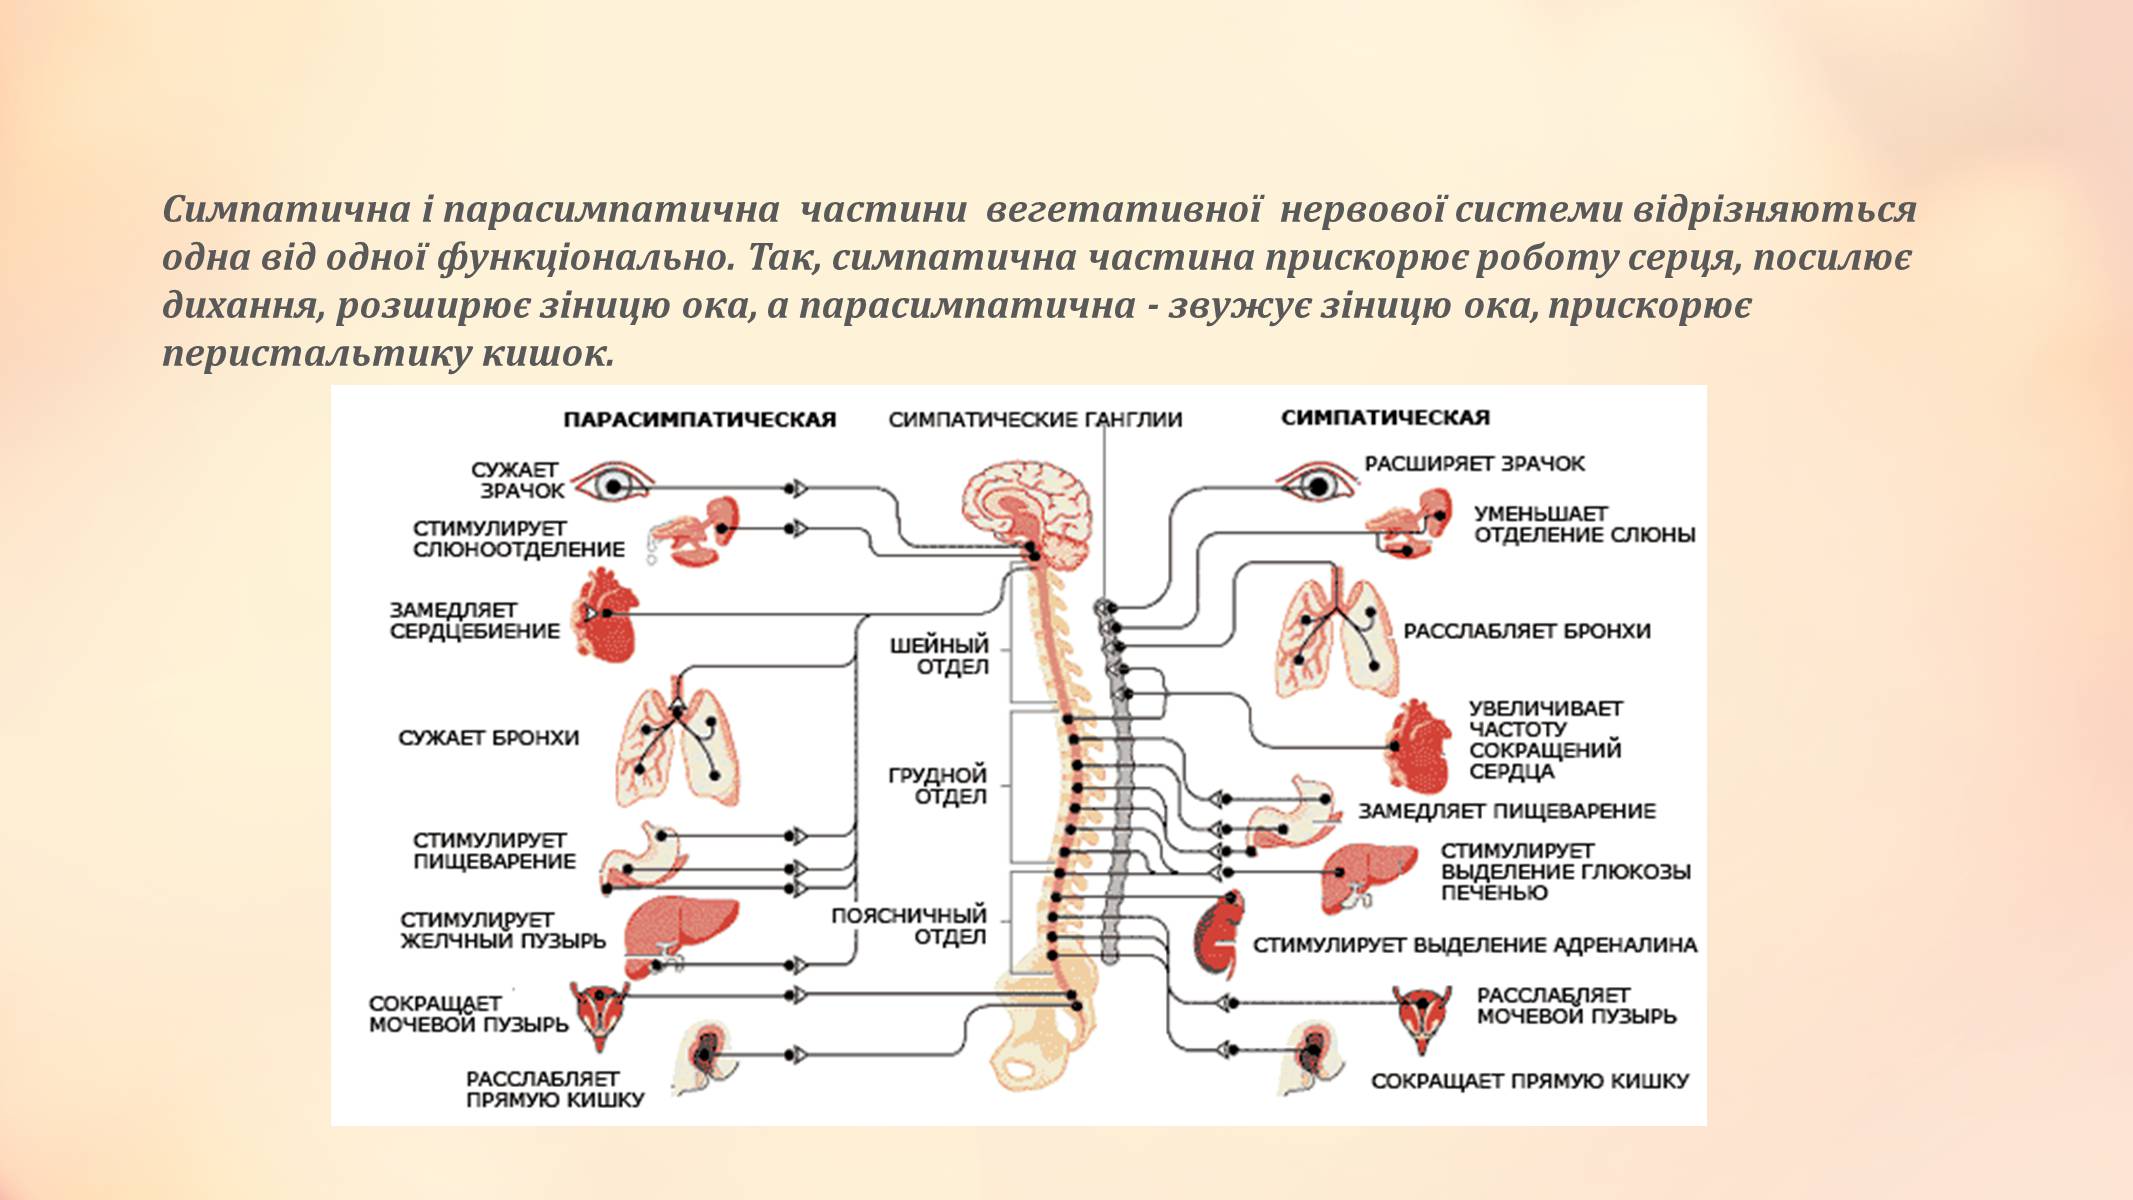 Нервный отдел и функции парасимпатической. Парасимпатический отдел вегетативной нервной системы. Автономная нервная система: парасимпатическая система. Отделы нервной системы человека симпатическая и парасимпатическая. Центральный отдел парасимпатической нервной системы.